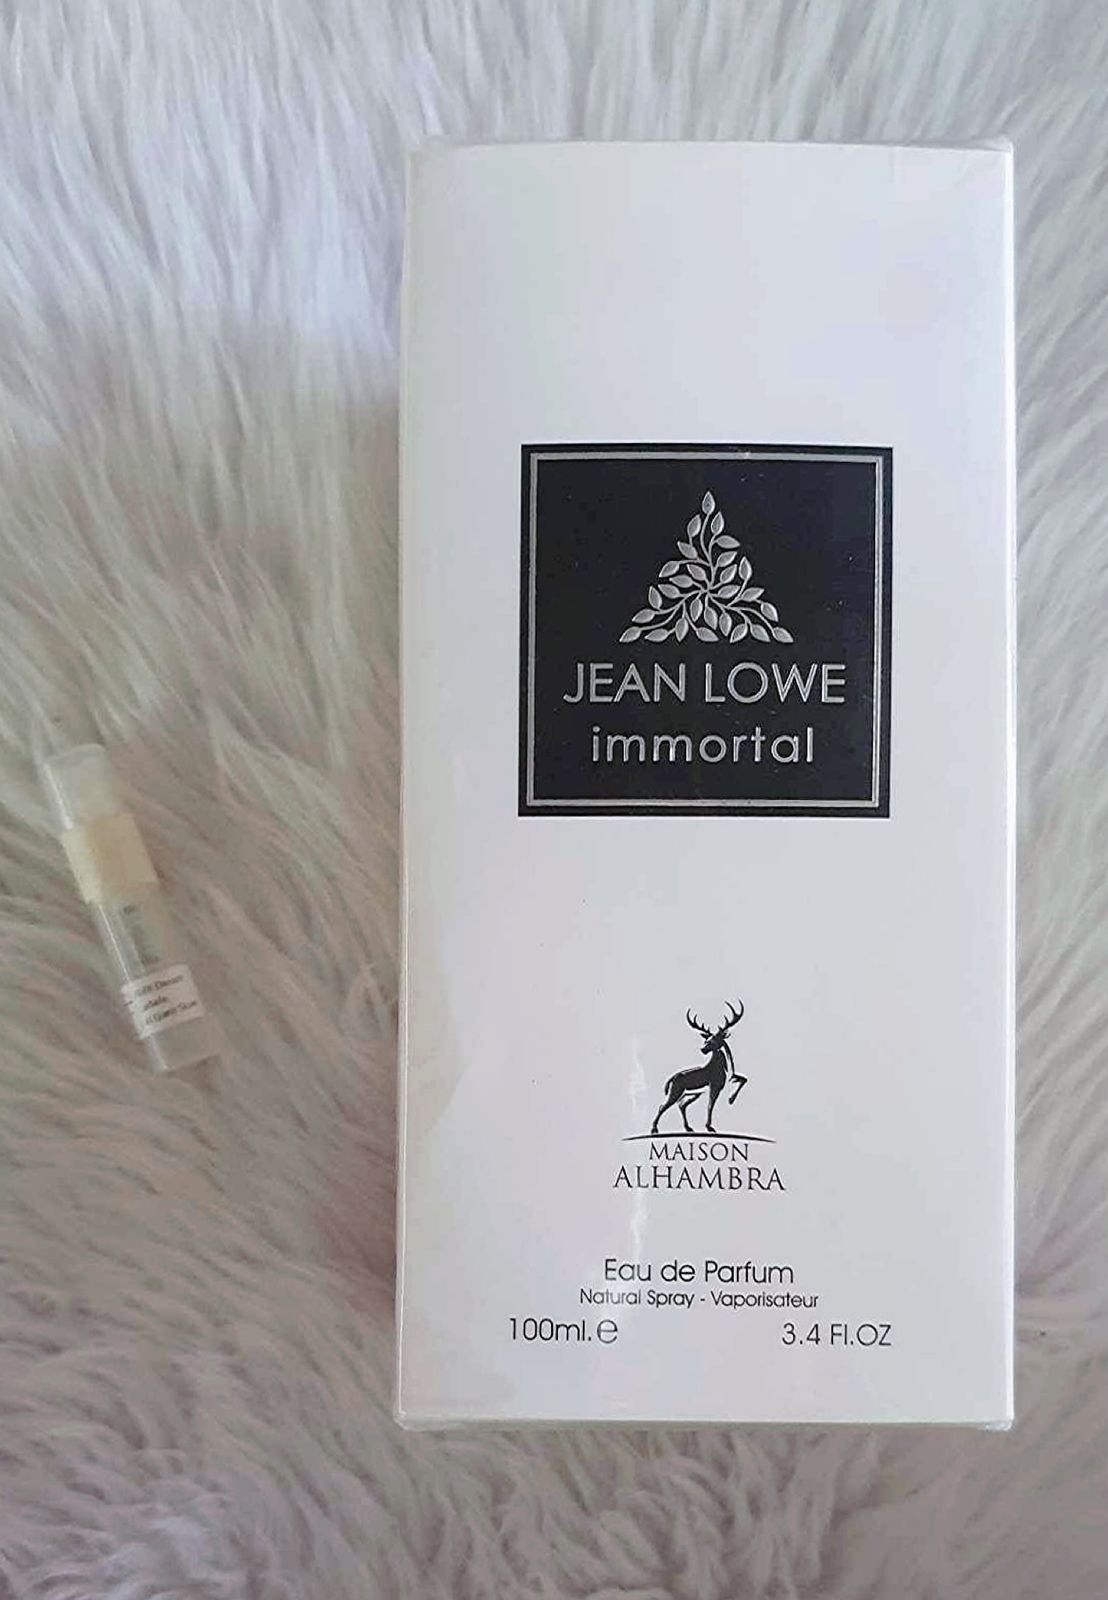 Louis Vuitton L'Immensite vs Maison Alhambra Jean Lowe Immortal 